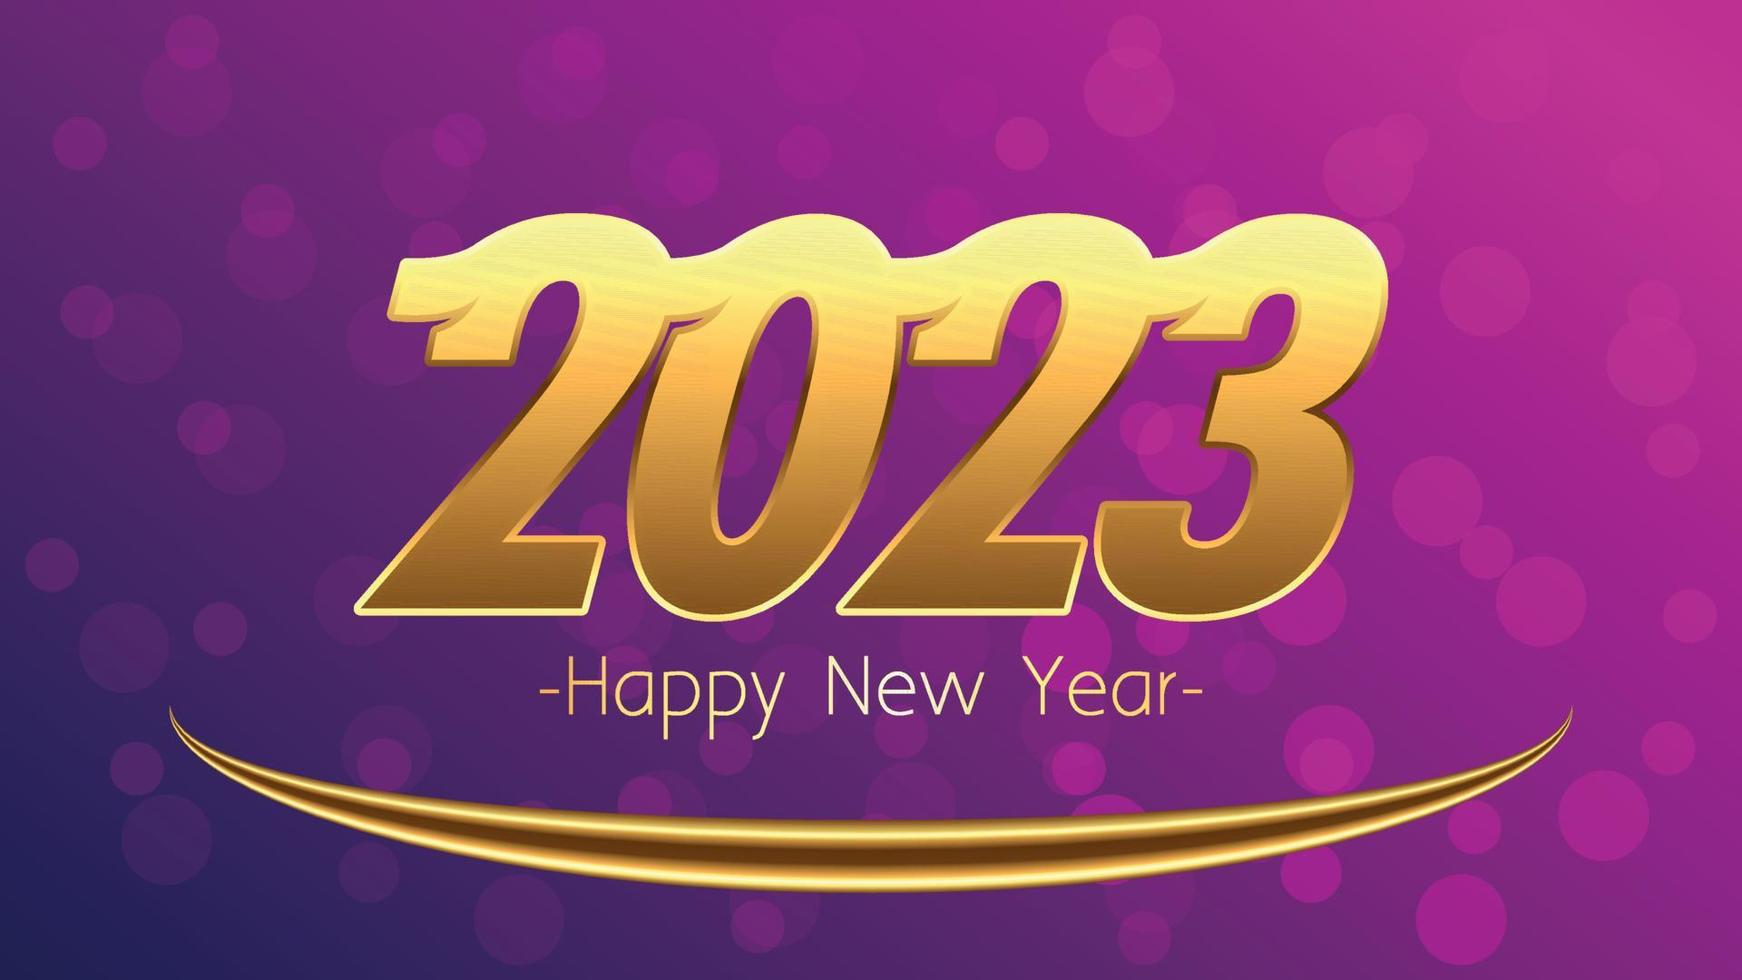 cartão de feliz ano novo de 2023 com fundo de iluminação colorida vetor